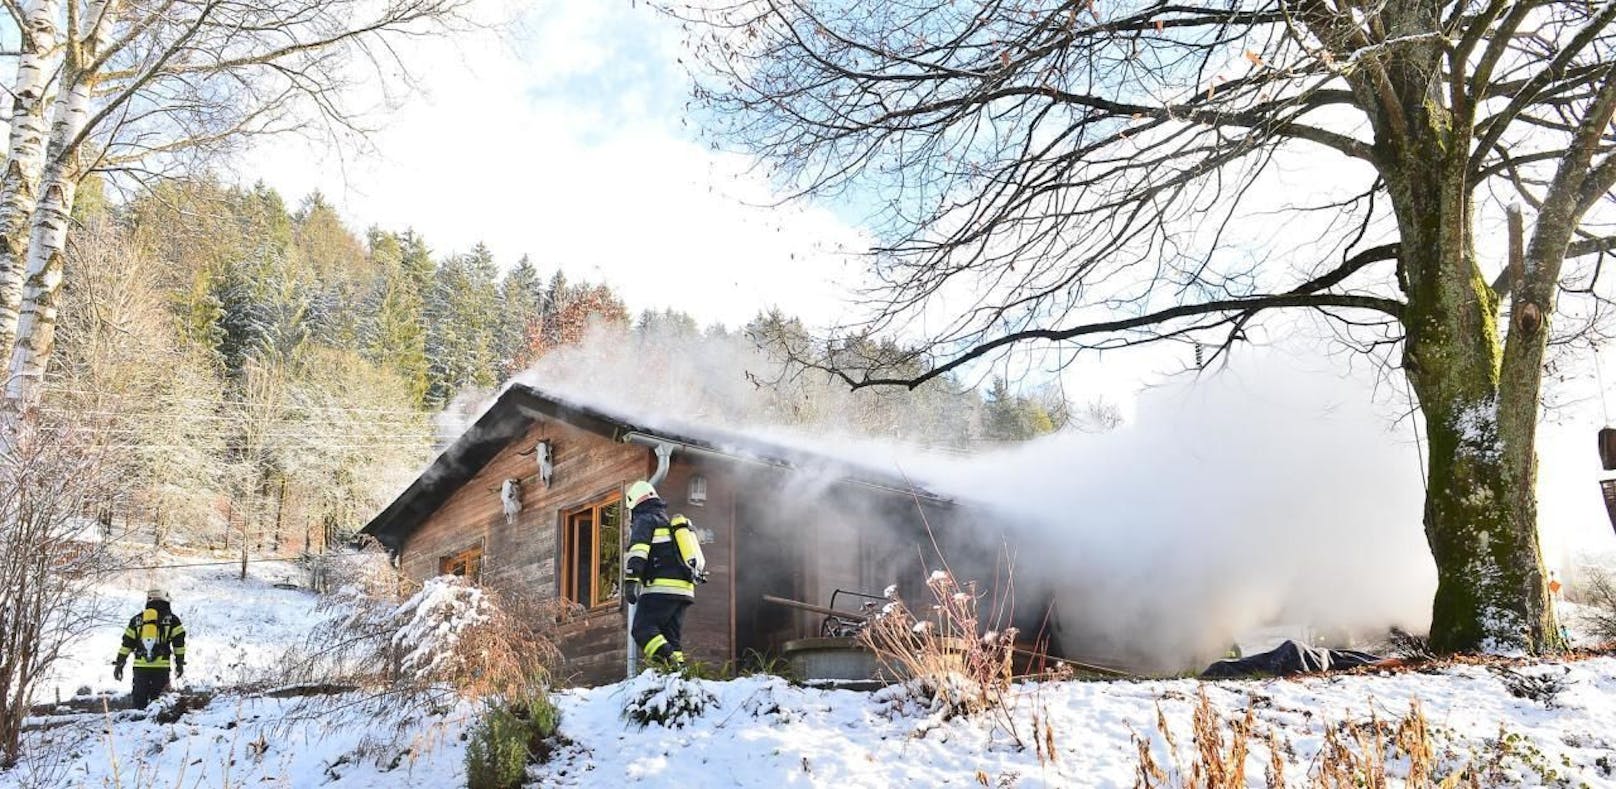 Hausbewohner wollte sich vor Feuer retten, stirbt